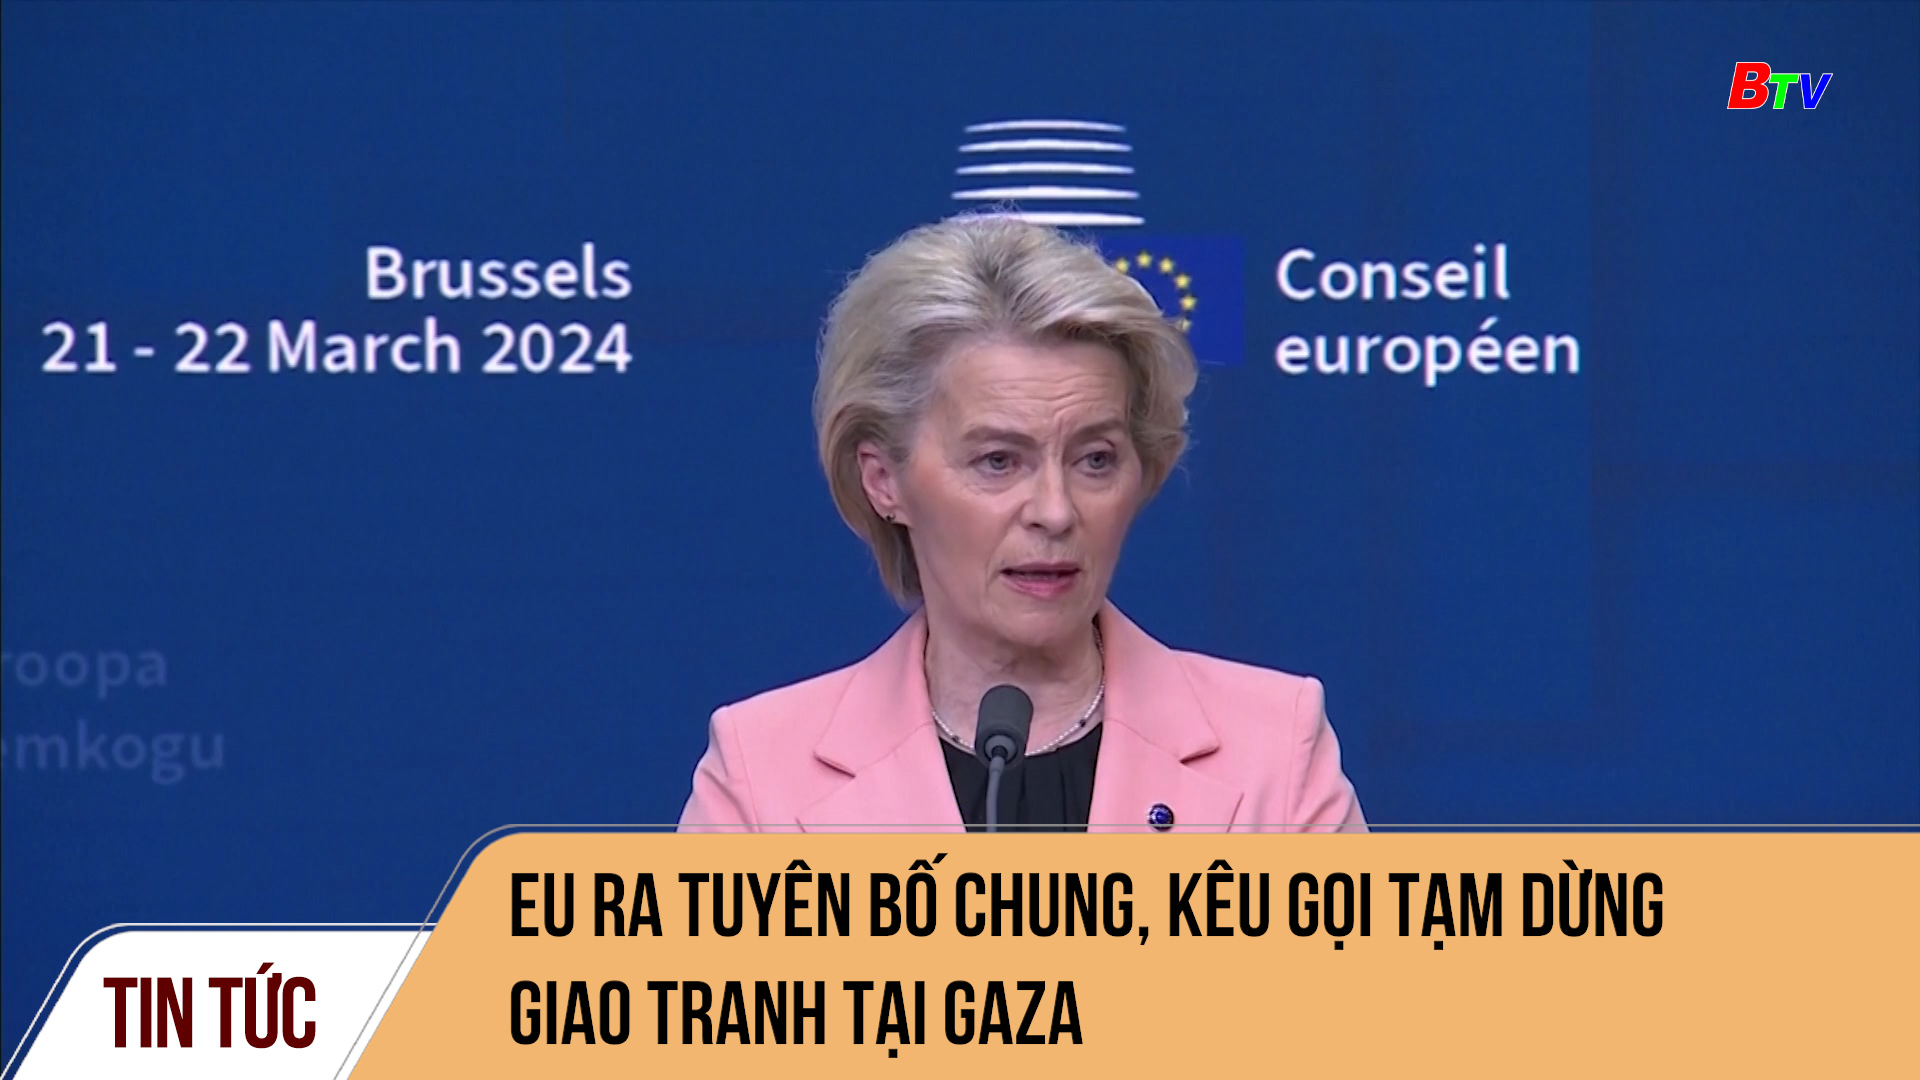 EU ra tuyên bố chung, kêu gọi tạm dừng giao tranh tại Gaza